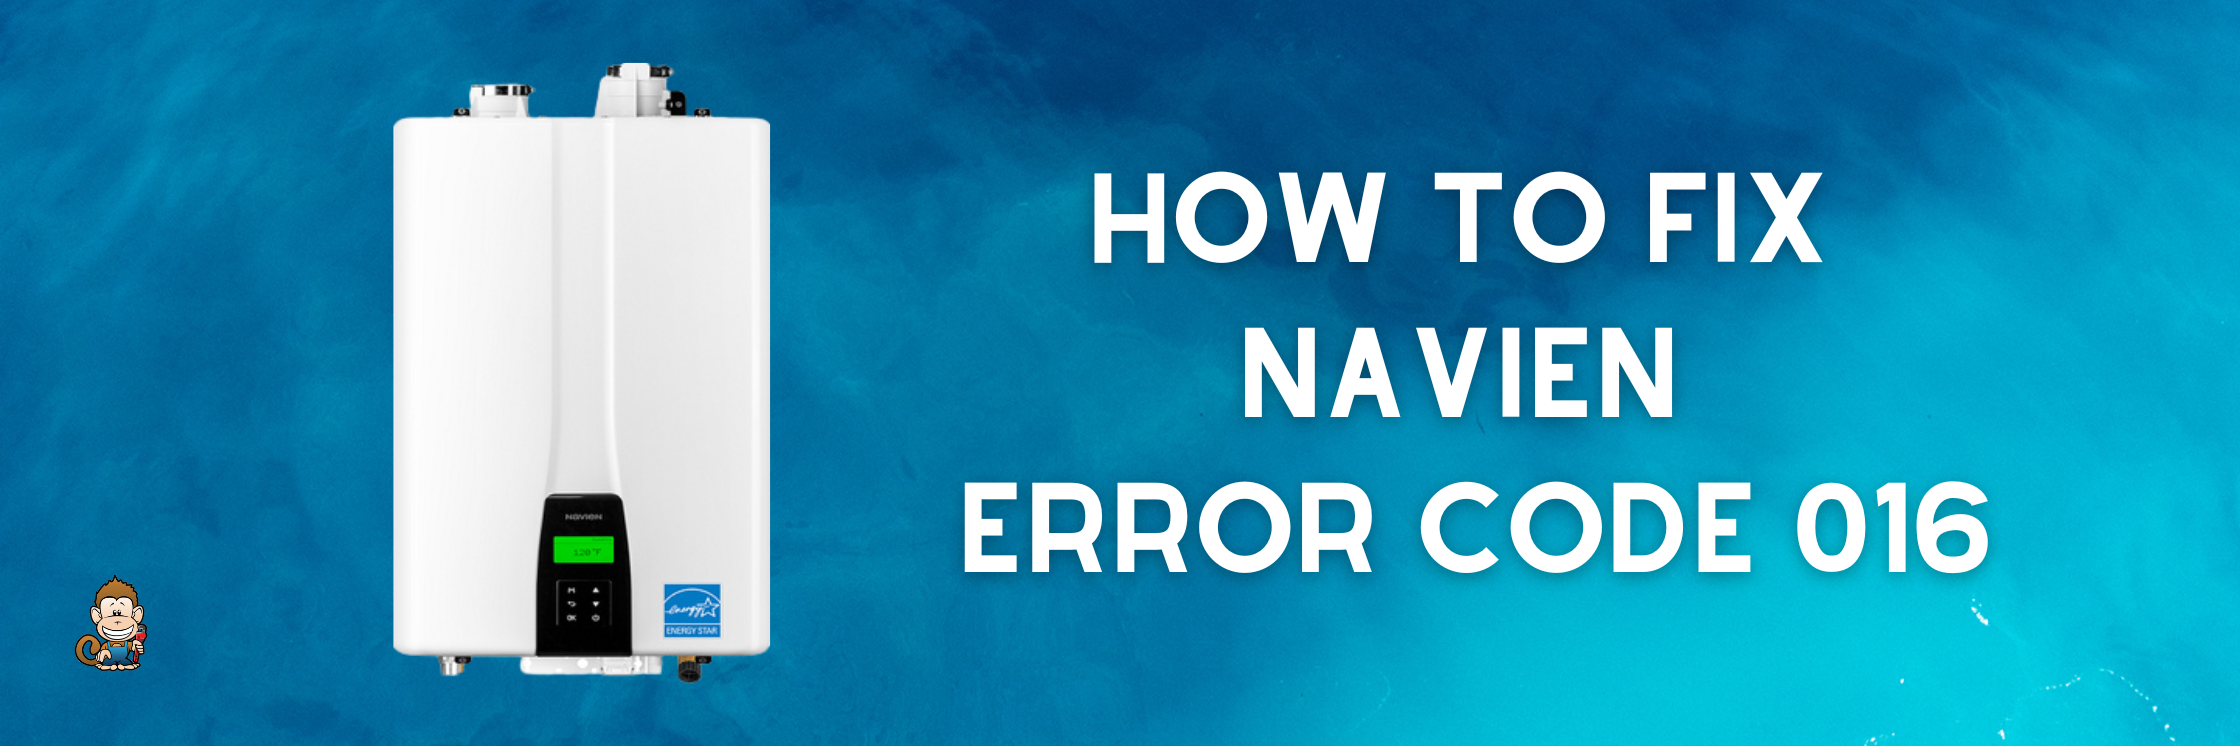 How to Fix Navien Error Code 016